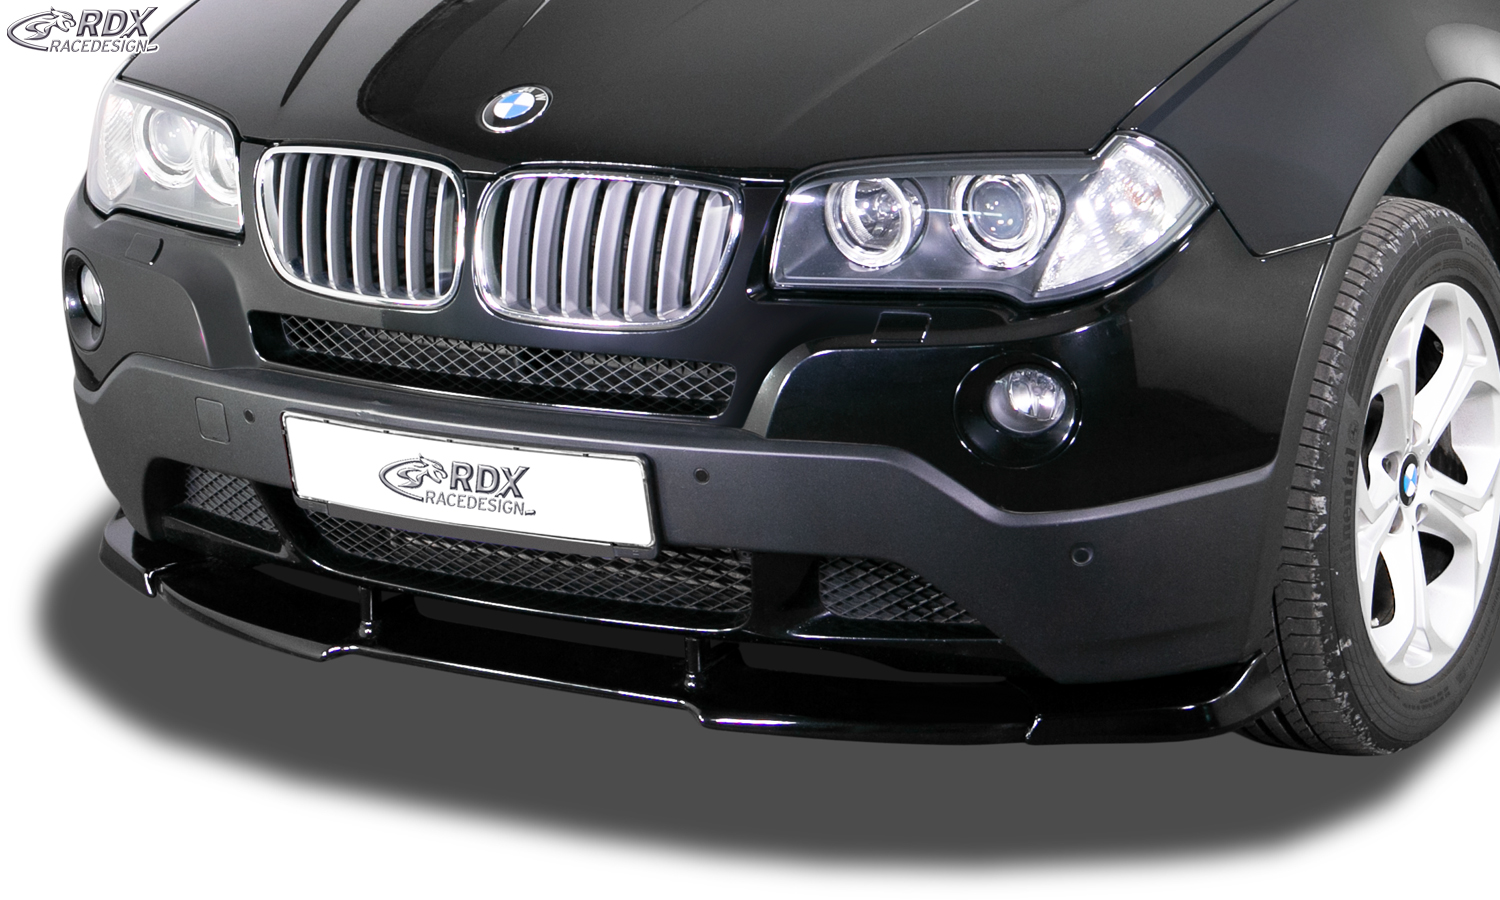 RDX Front Spoiler VARIO-X for BMW X3 E83 2003-2010 Front Lip Splitter